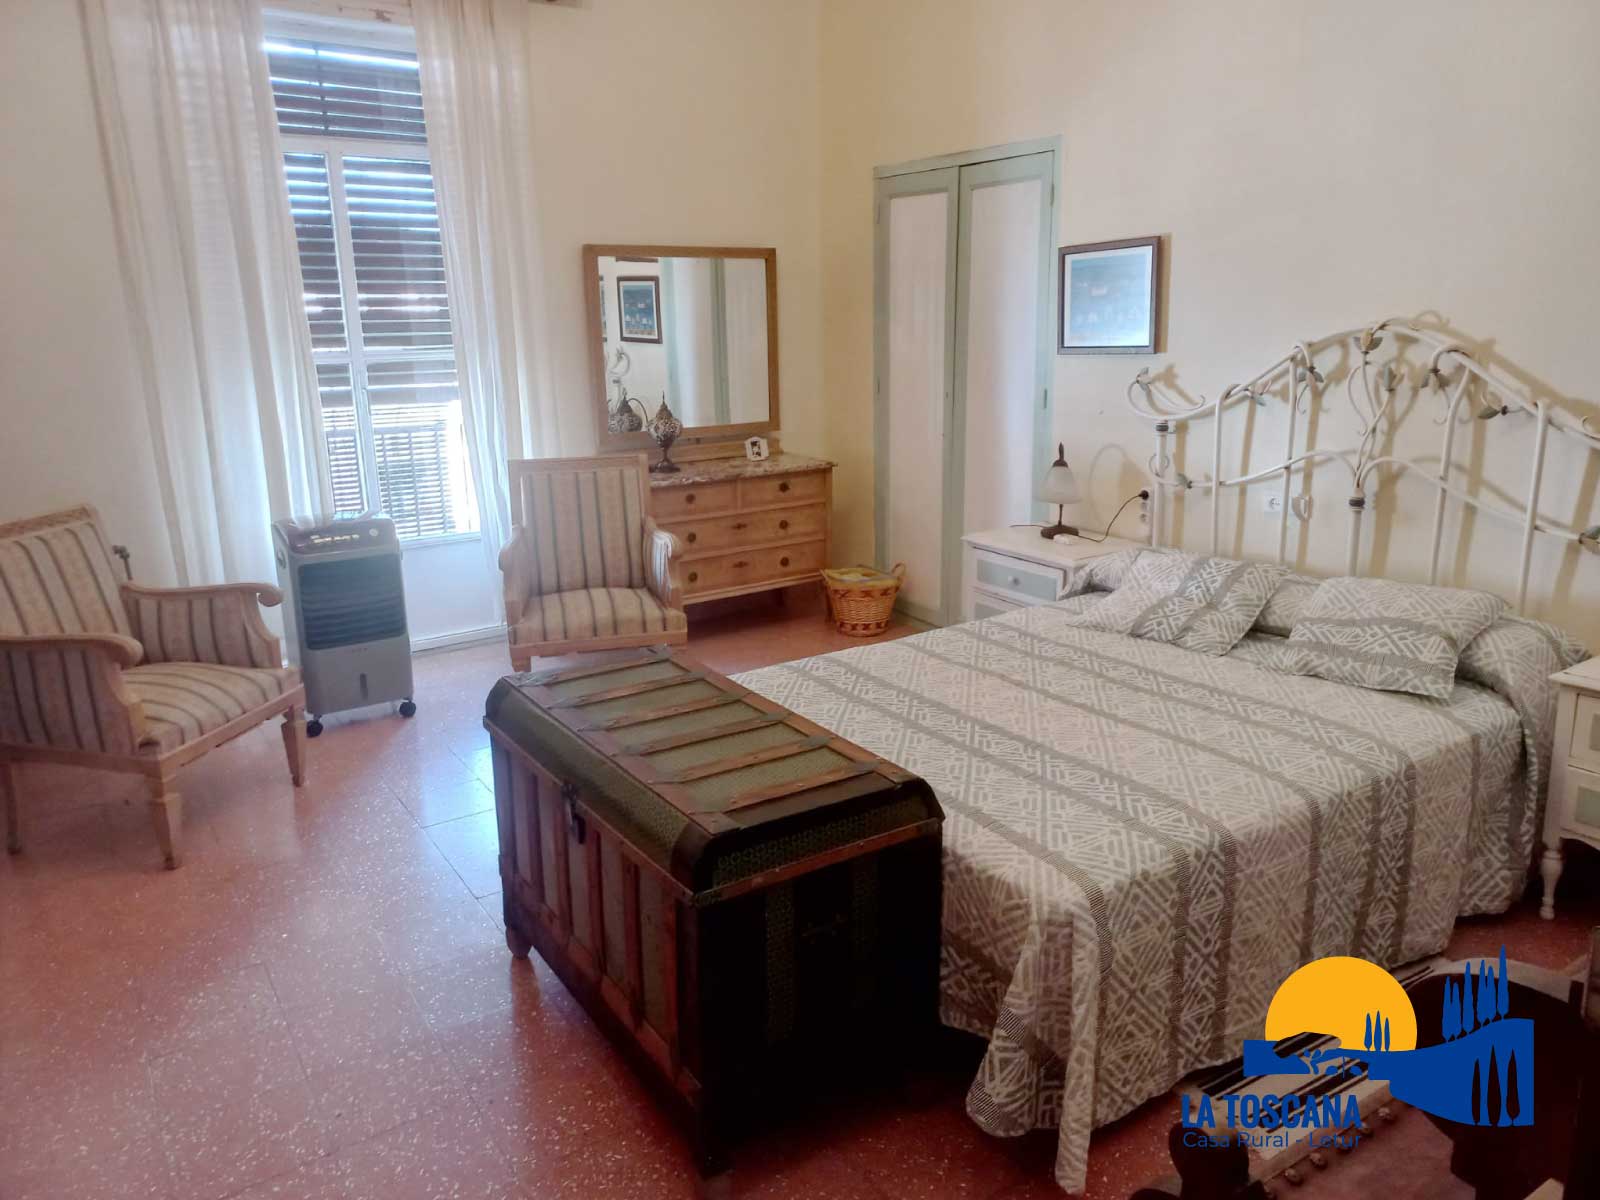 Habitación con cama doble - La Toscana de Letur - Casa rural